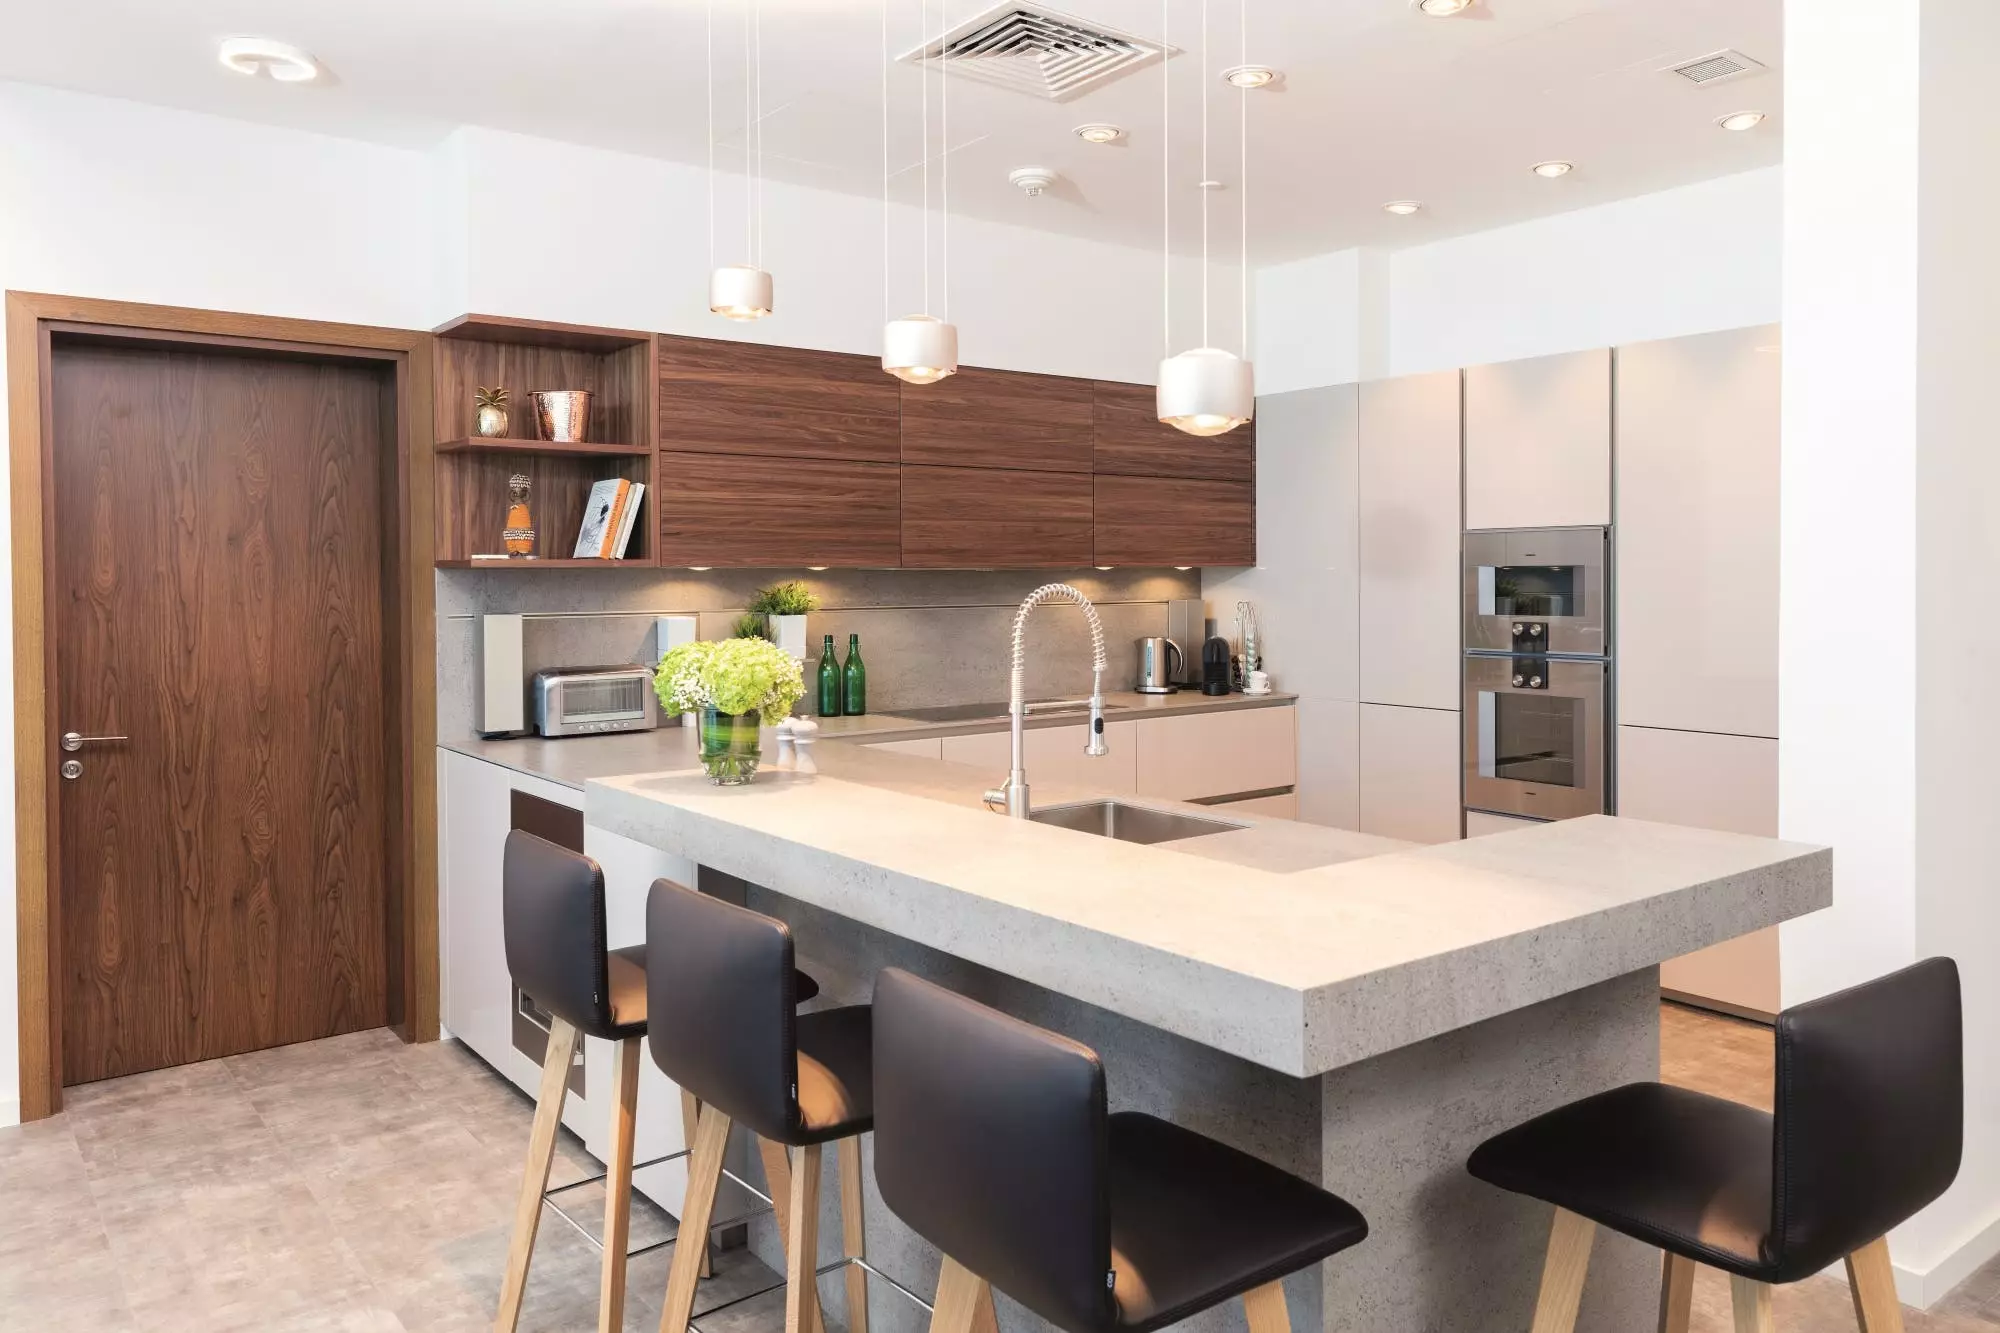 Gợi ý thiết kế nội thất Futuristic cho nhà bếp